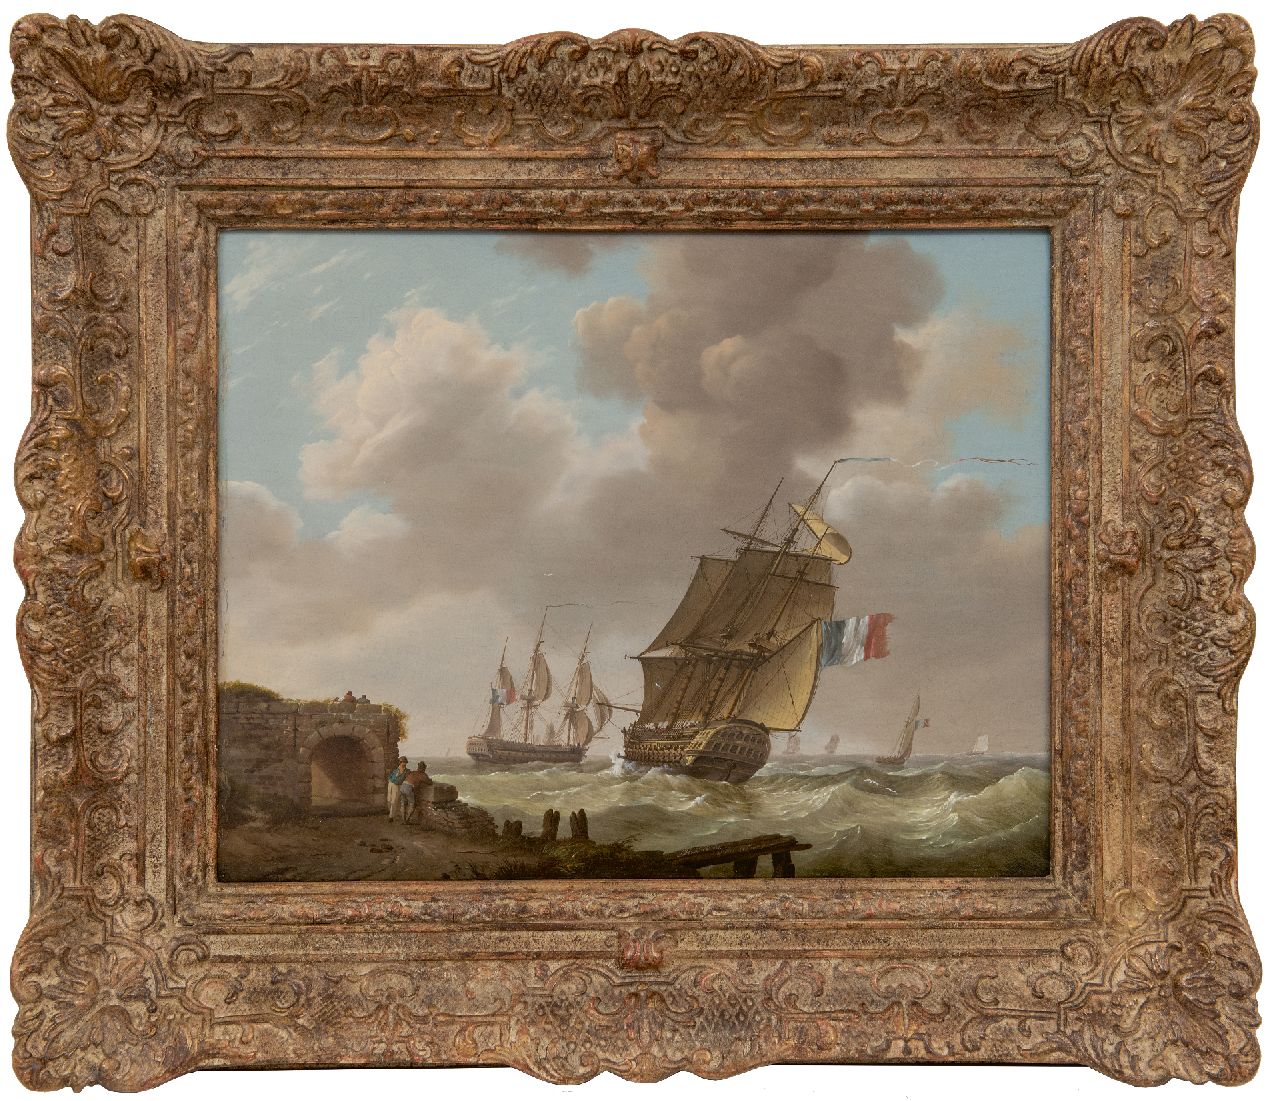 Koekkoek J.H.  | Johannes Hermanus Koekkoek | Schilderijen te koop aangeboden | Laverende oorlogsschepen voor de Zeeuwse kust, olieverf op paneel 32,1 x 40,7 cm, gesigneerd middenonder